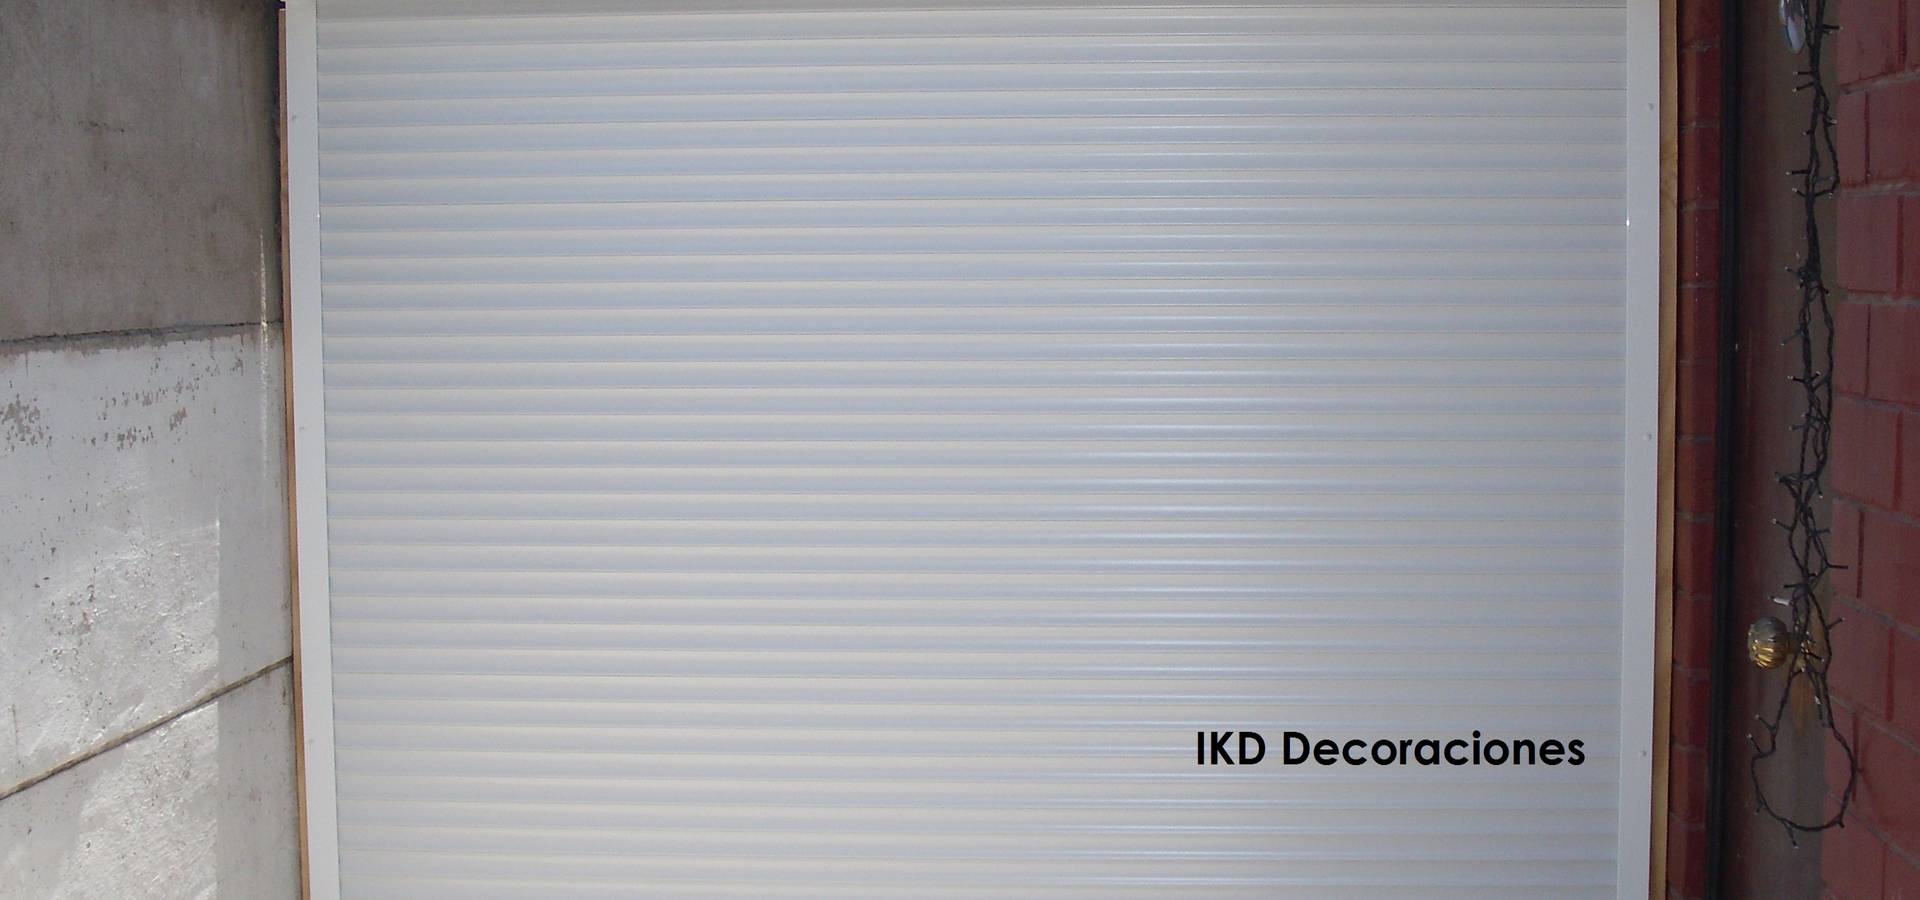 IKD Decoraciones